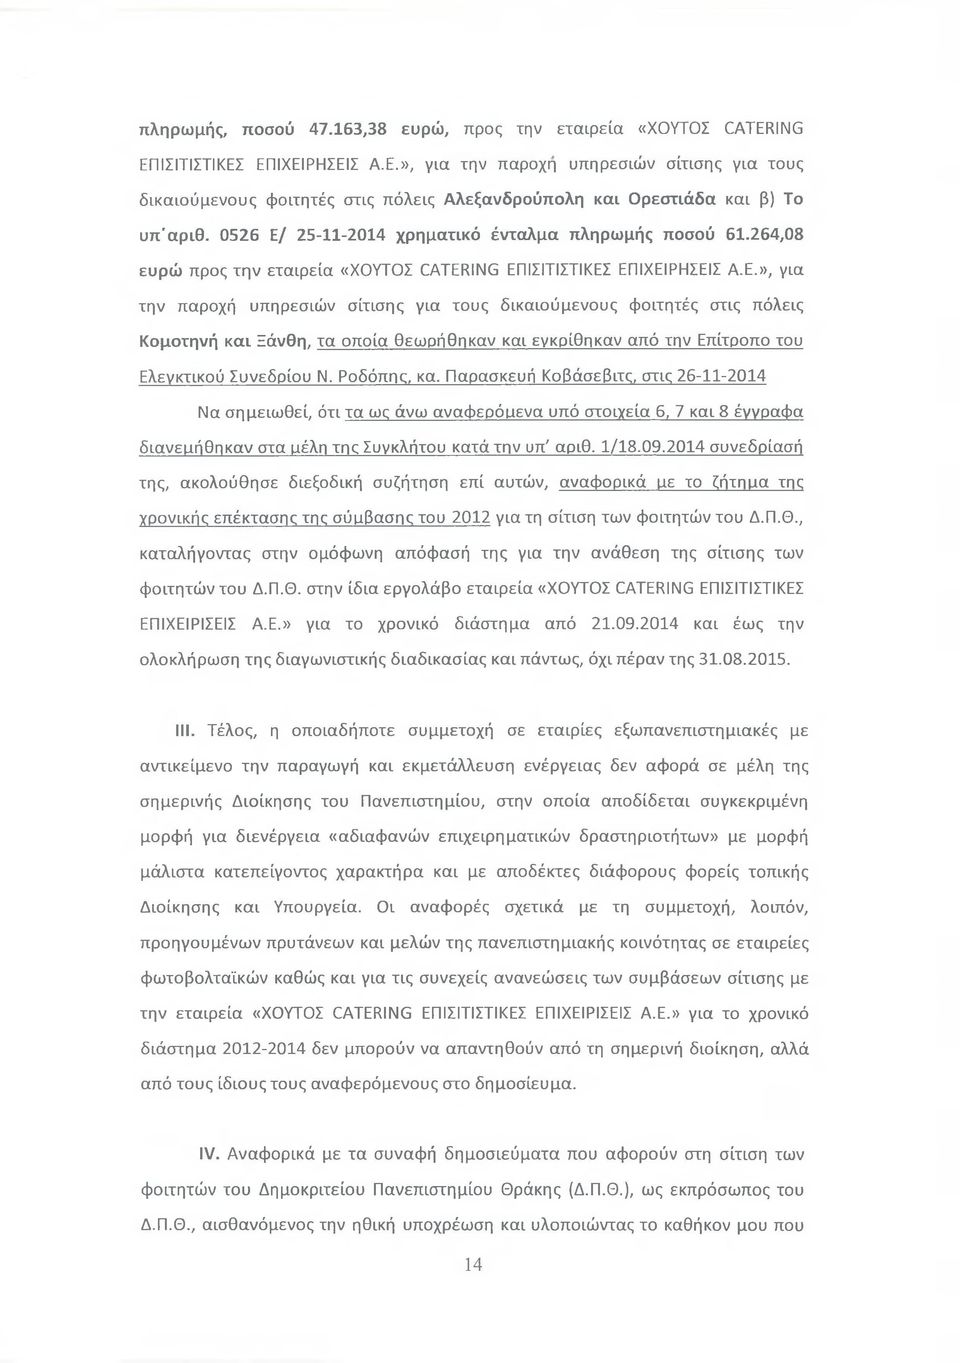 Ροδόπης, κα. Παρασκευή Κοβάσεβιτς, στις 26-11-2014 Να σημειωθεί, ότι τα ως άνω αναφερόιιενα υπό στοιχεία 6, 7 και 8 έγγραφα διανειιήθηκαν στα ιιέλη της Συγκλήτου κατά την υπ7αριθ. 1/18.09.